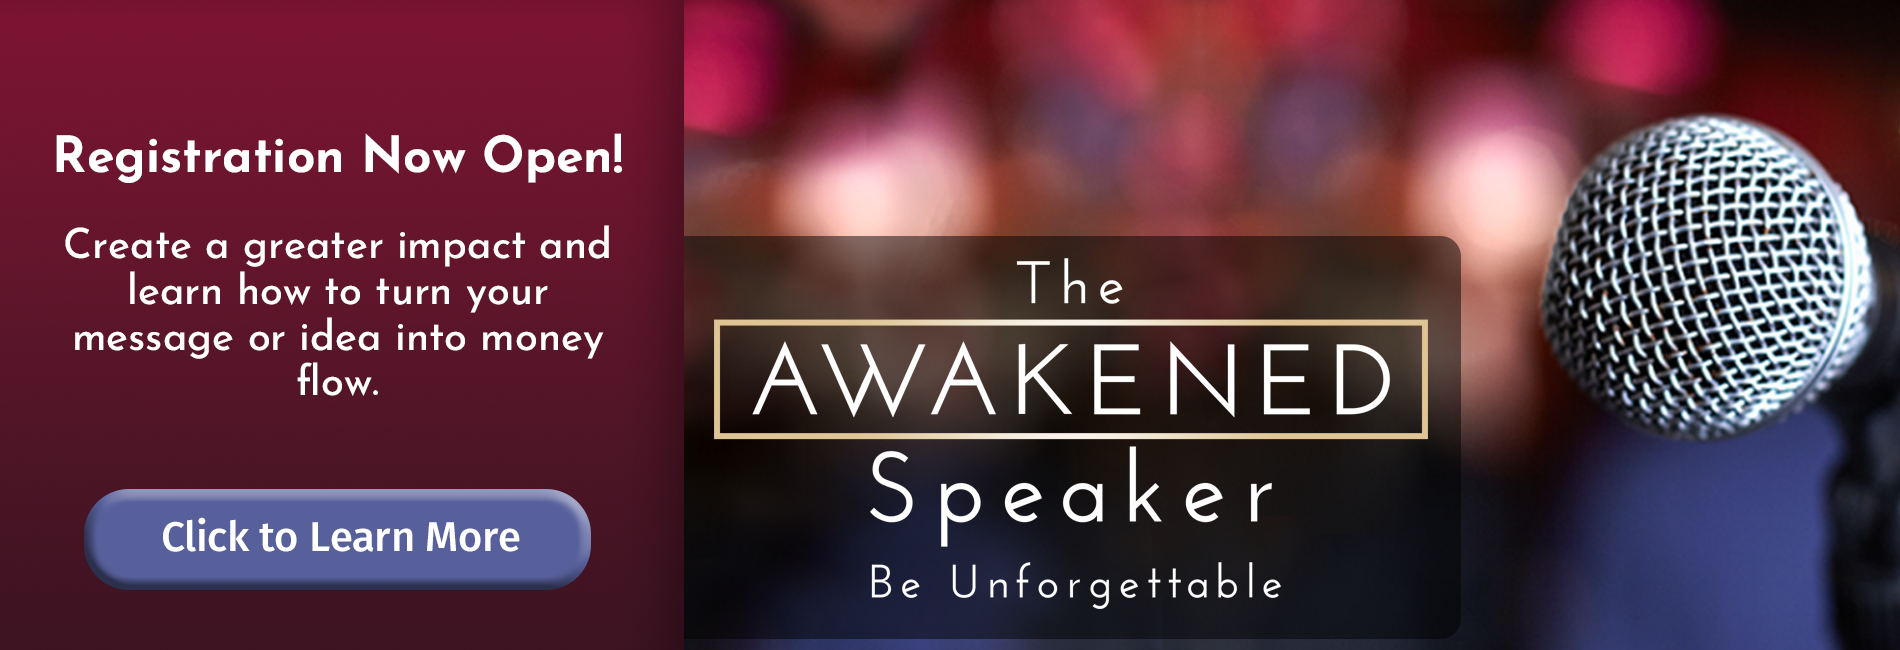 The Awakened Speaker